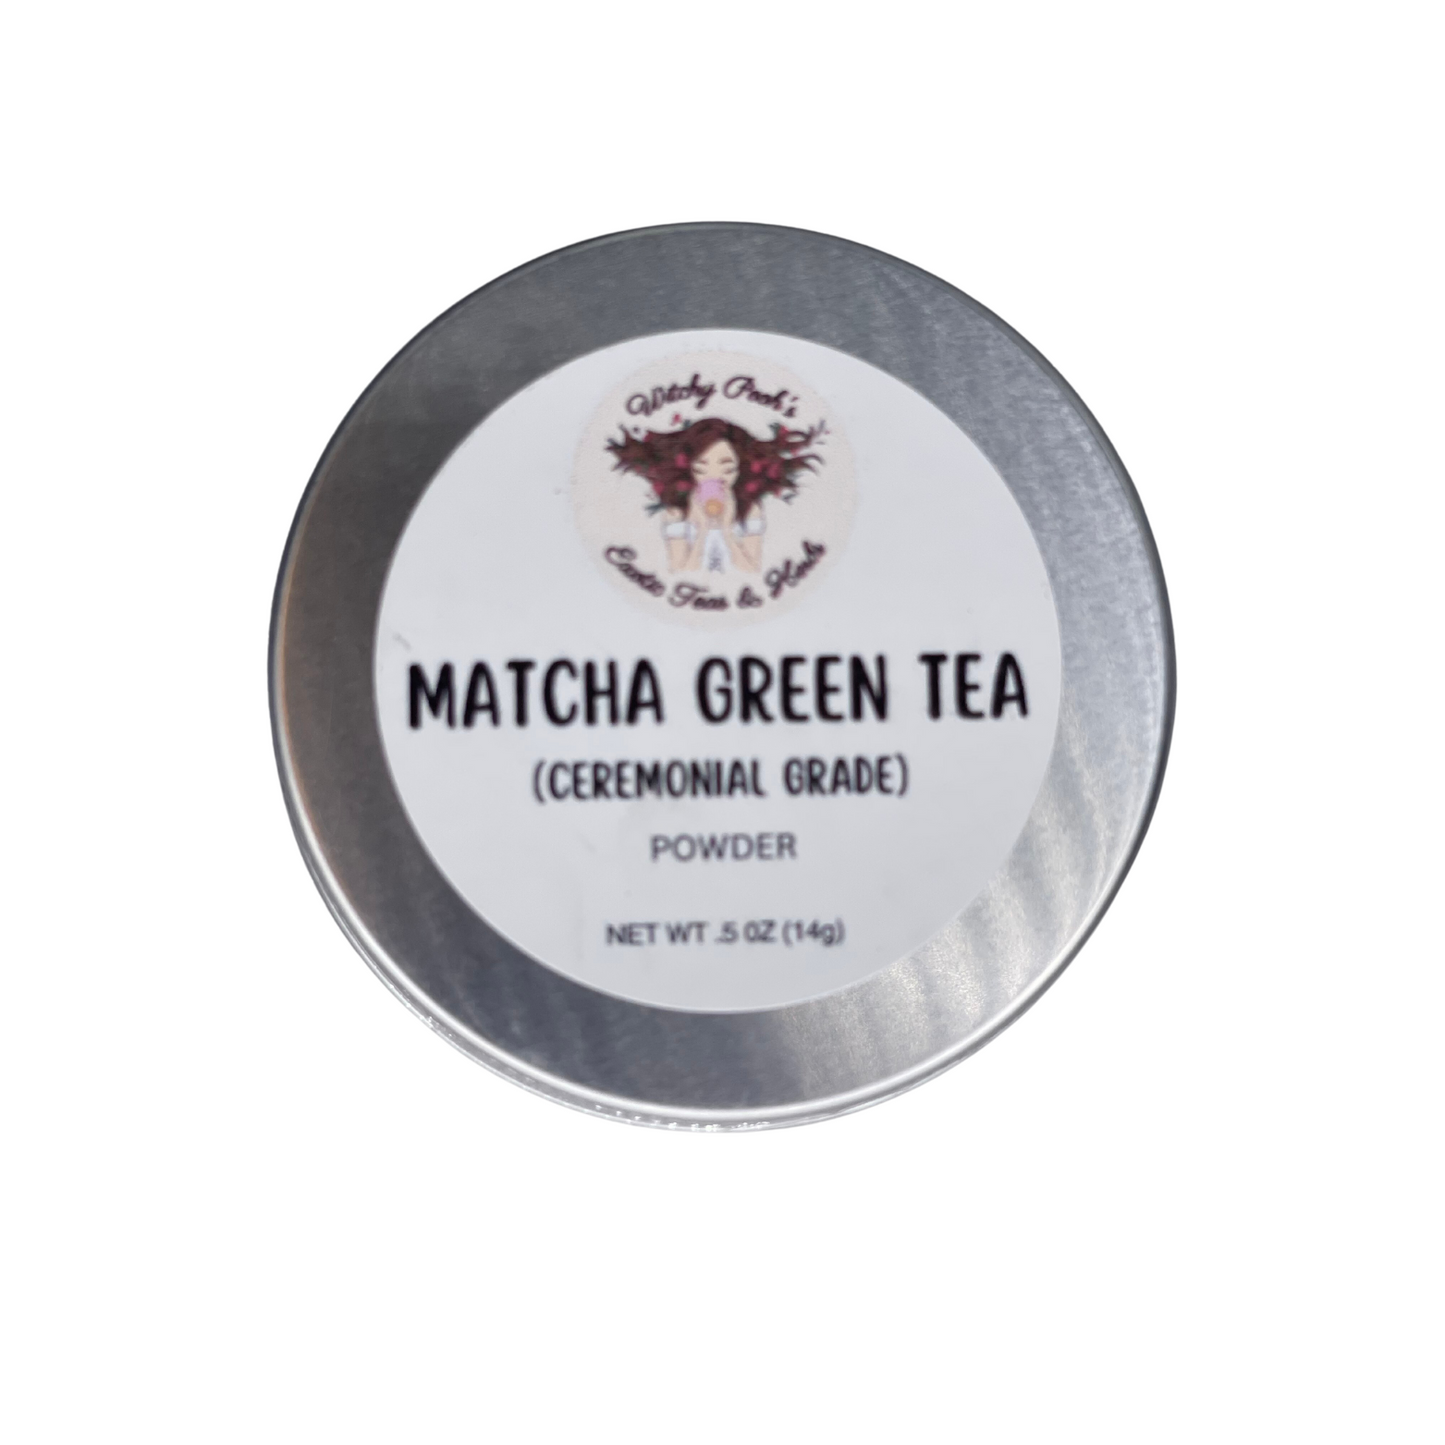 Matcha Tea, Green Tea, Ceremonial Grade Tea, Green Tea Powder